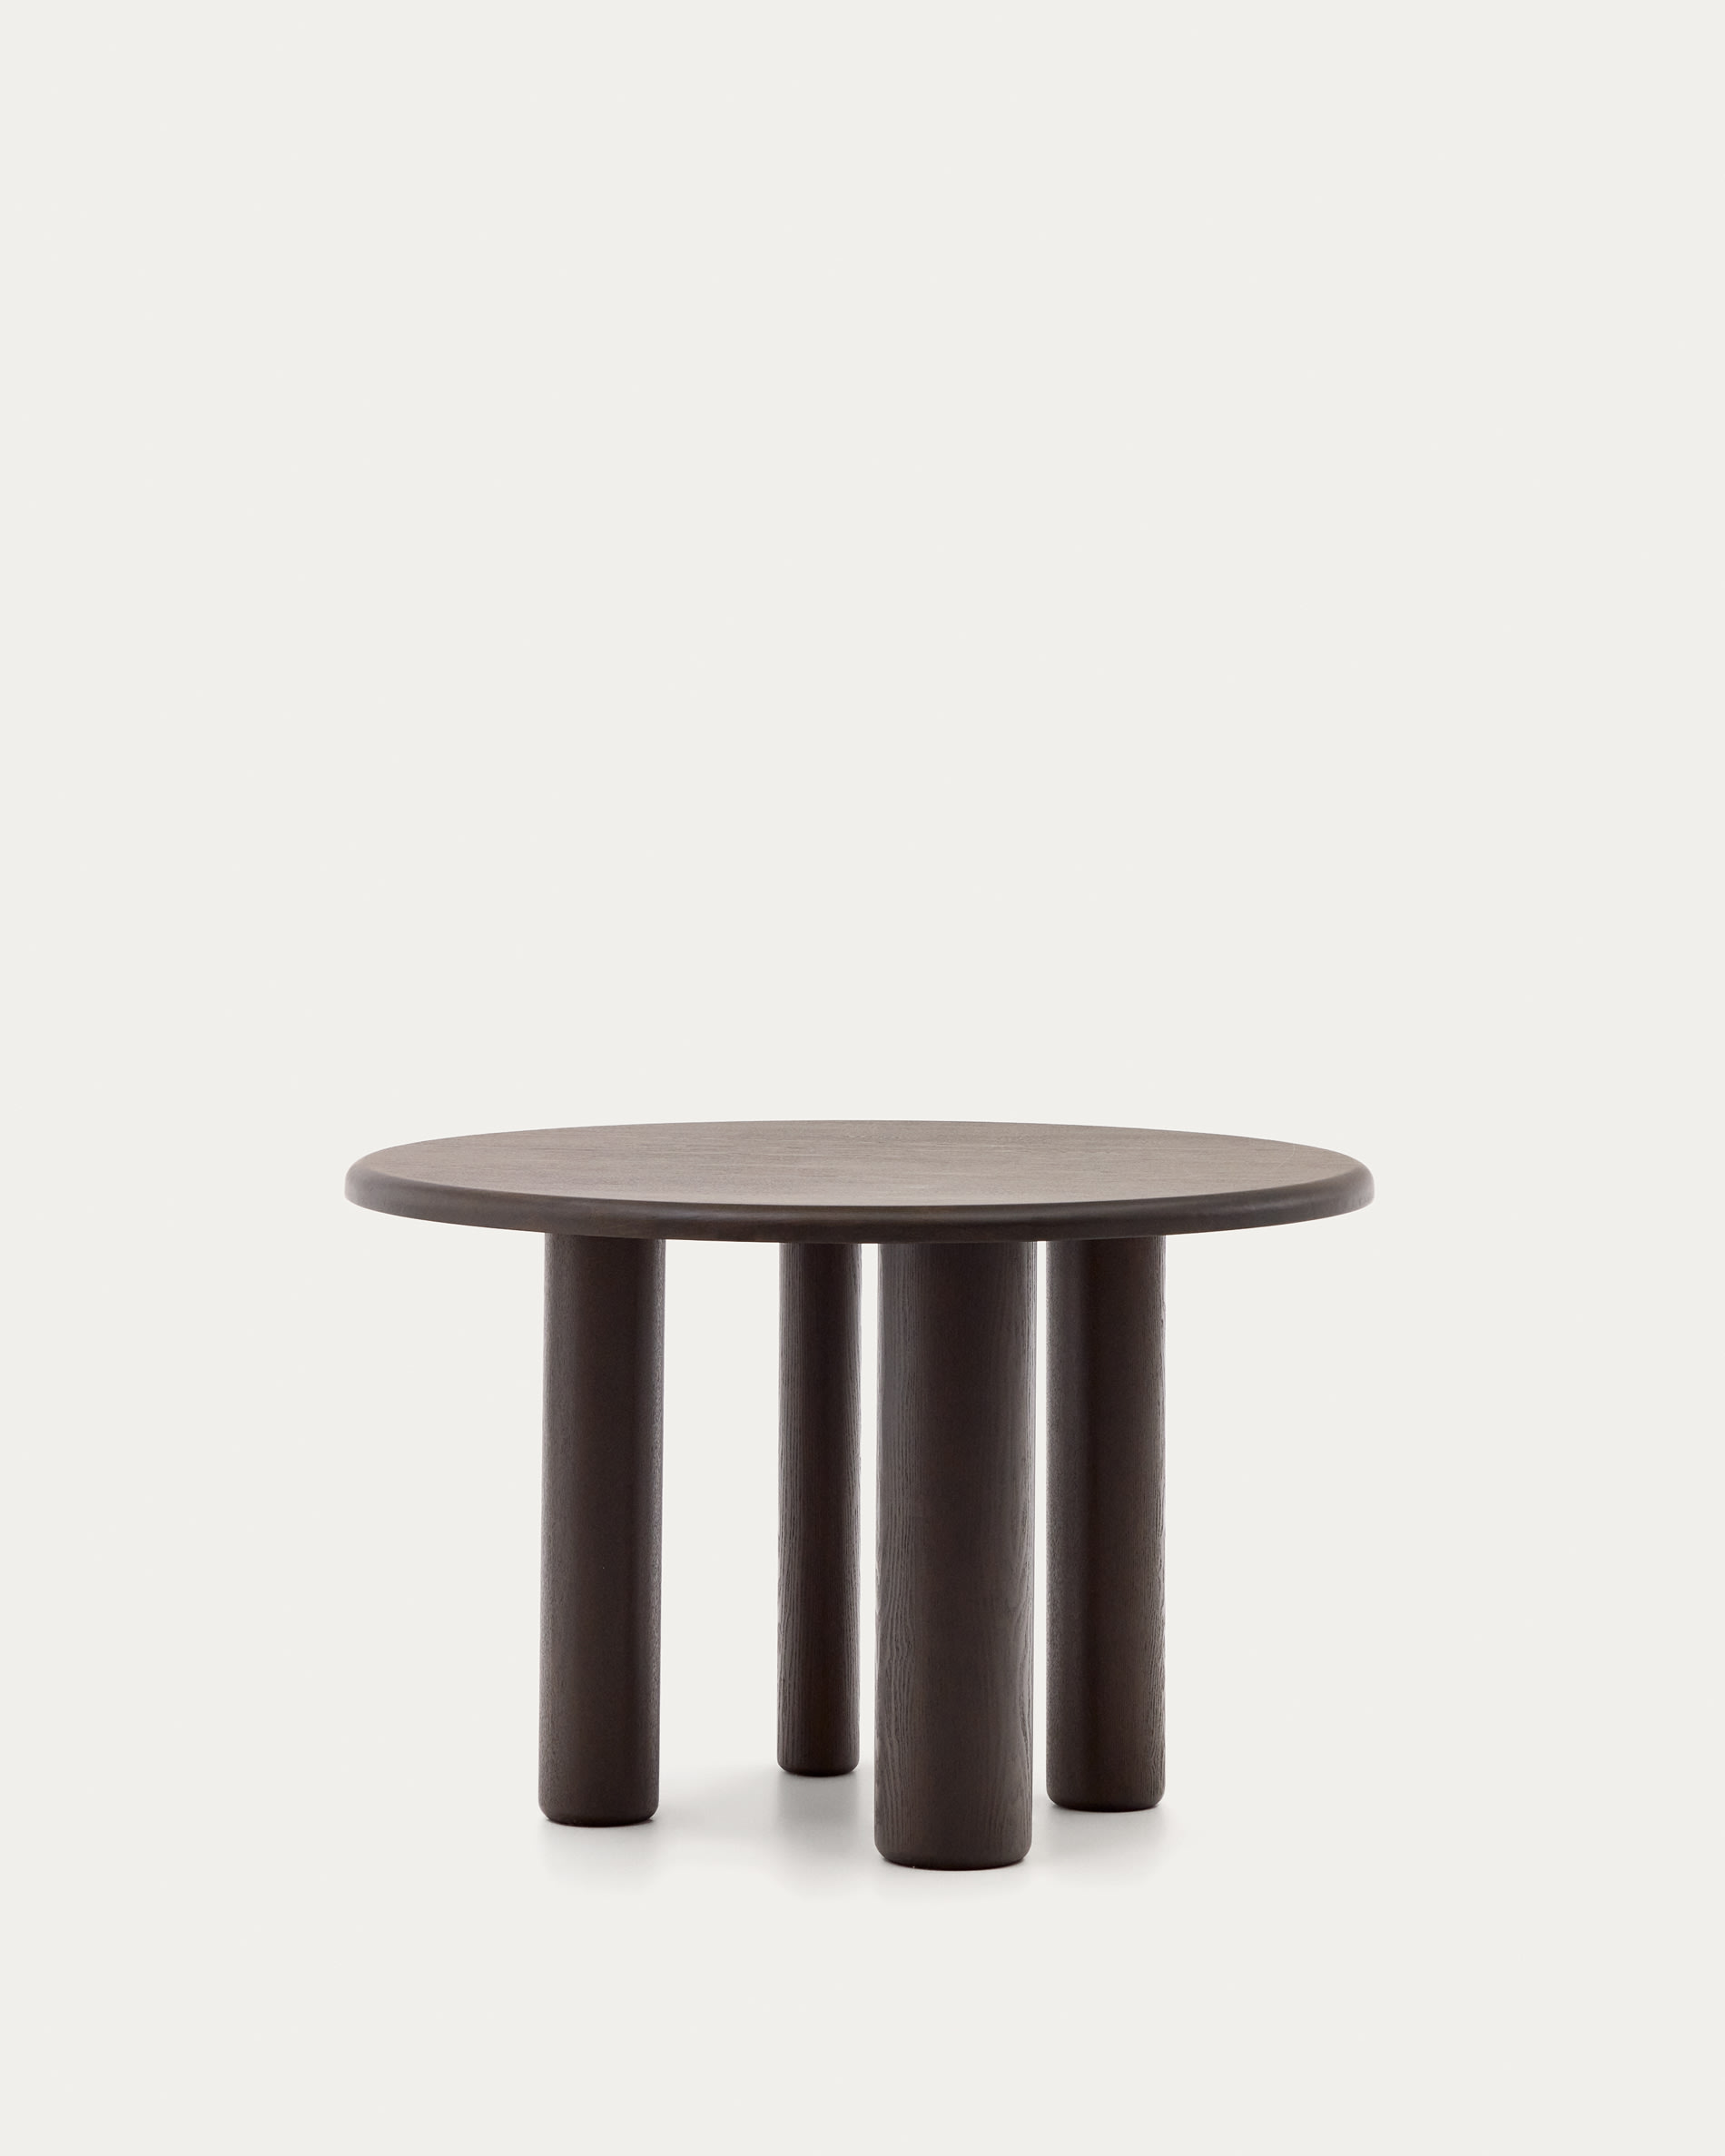 Mailen round table in ash wood veneer with dark finish, Ø 120 cm